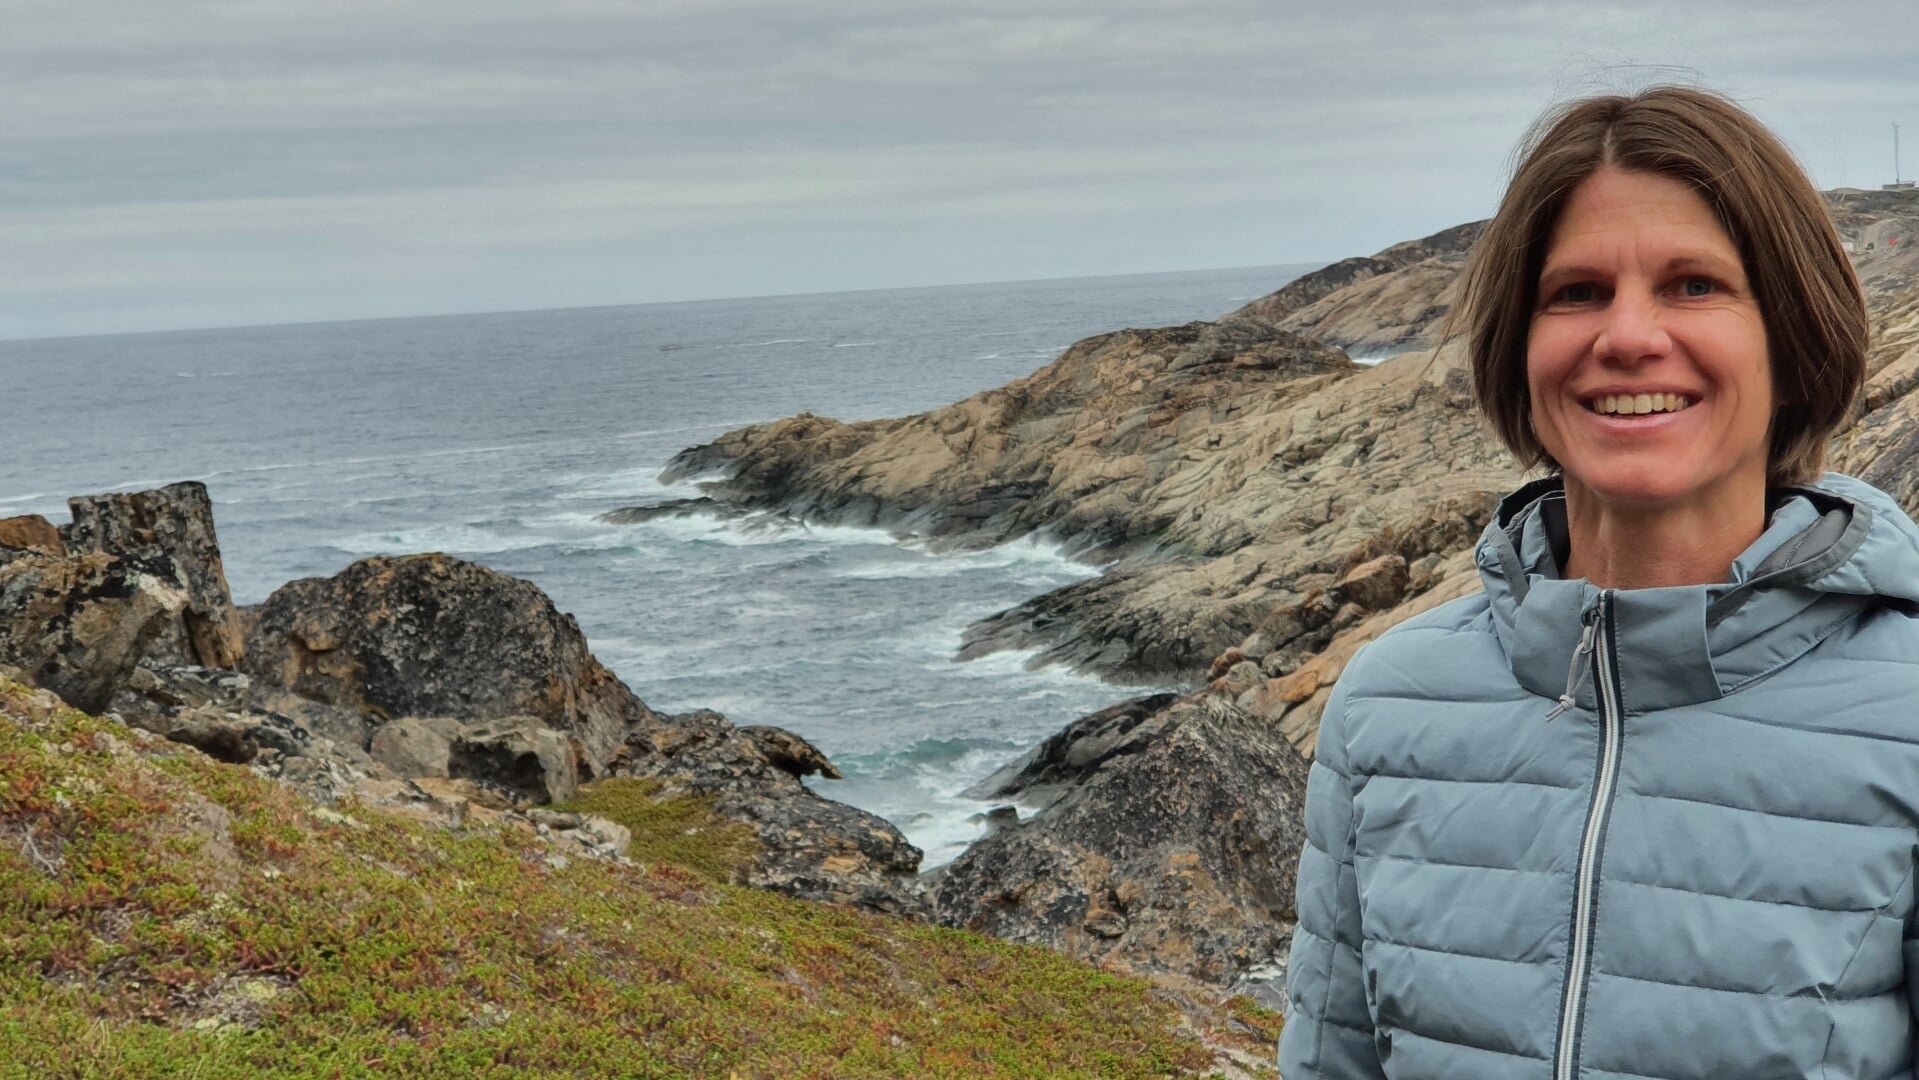 Eva Ritter i Sisimiut i Grønland. Hun arbejder blandt andet med gennem historier om de nordiske folk at udbrede viden om bæredygtighed. Det sker så overbevisende, at hun nu får en pris for det. Foto: